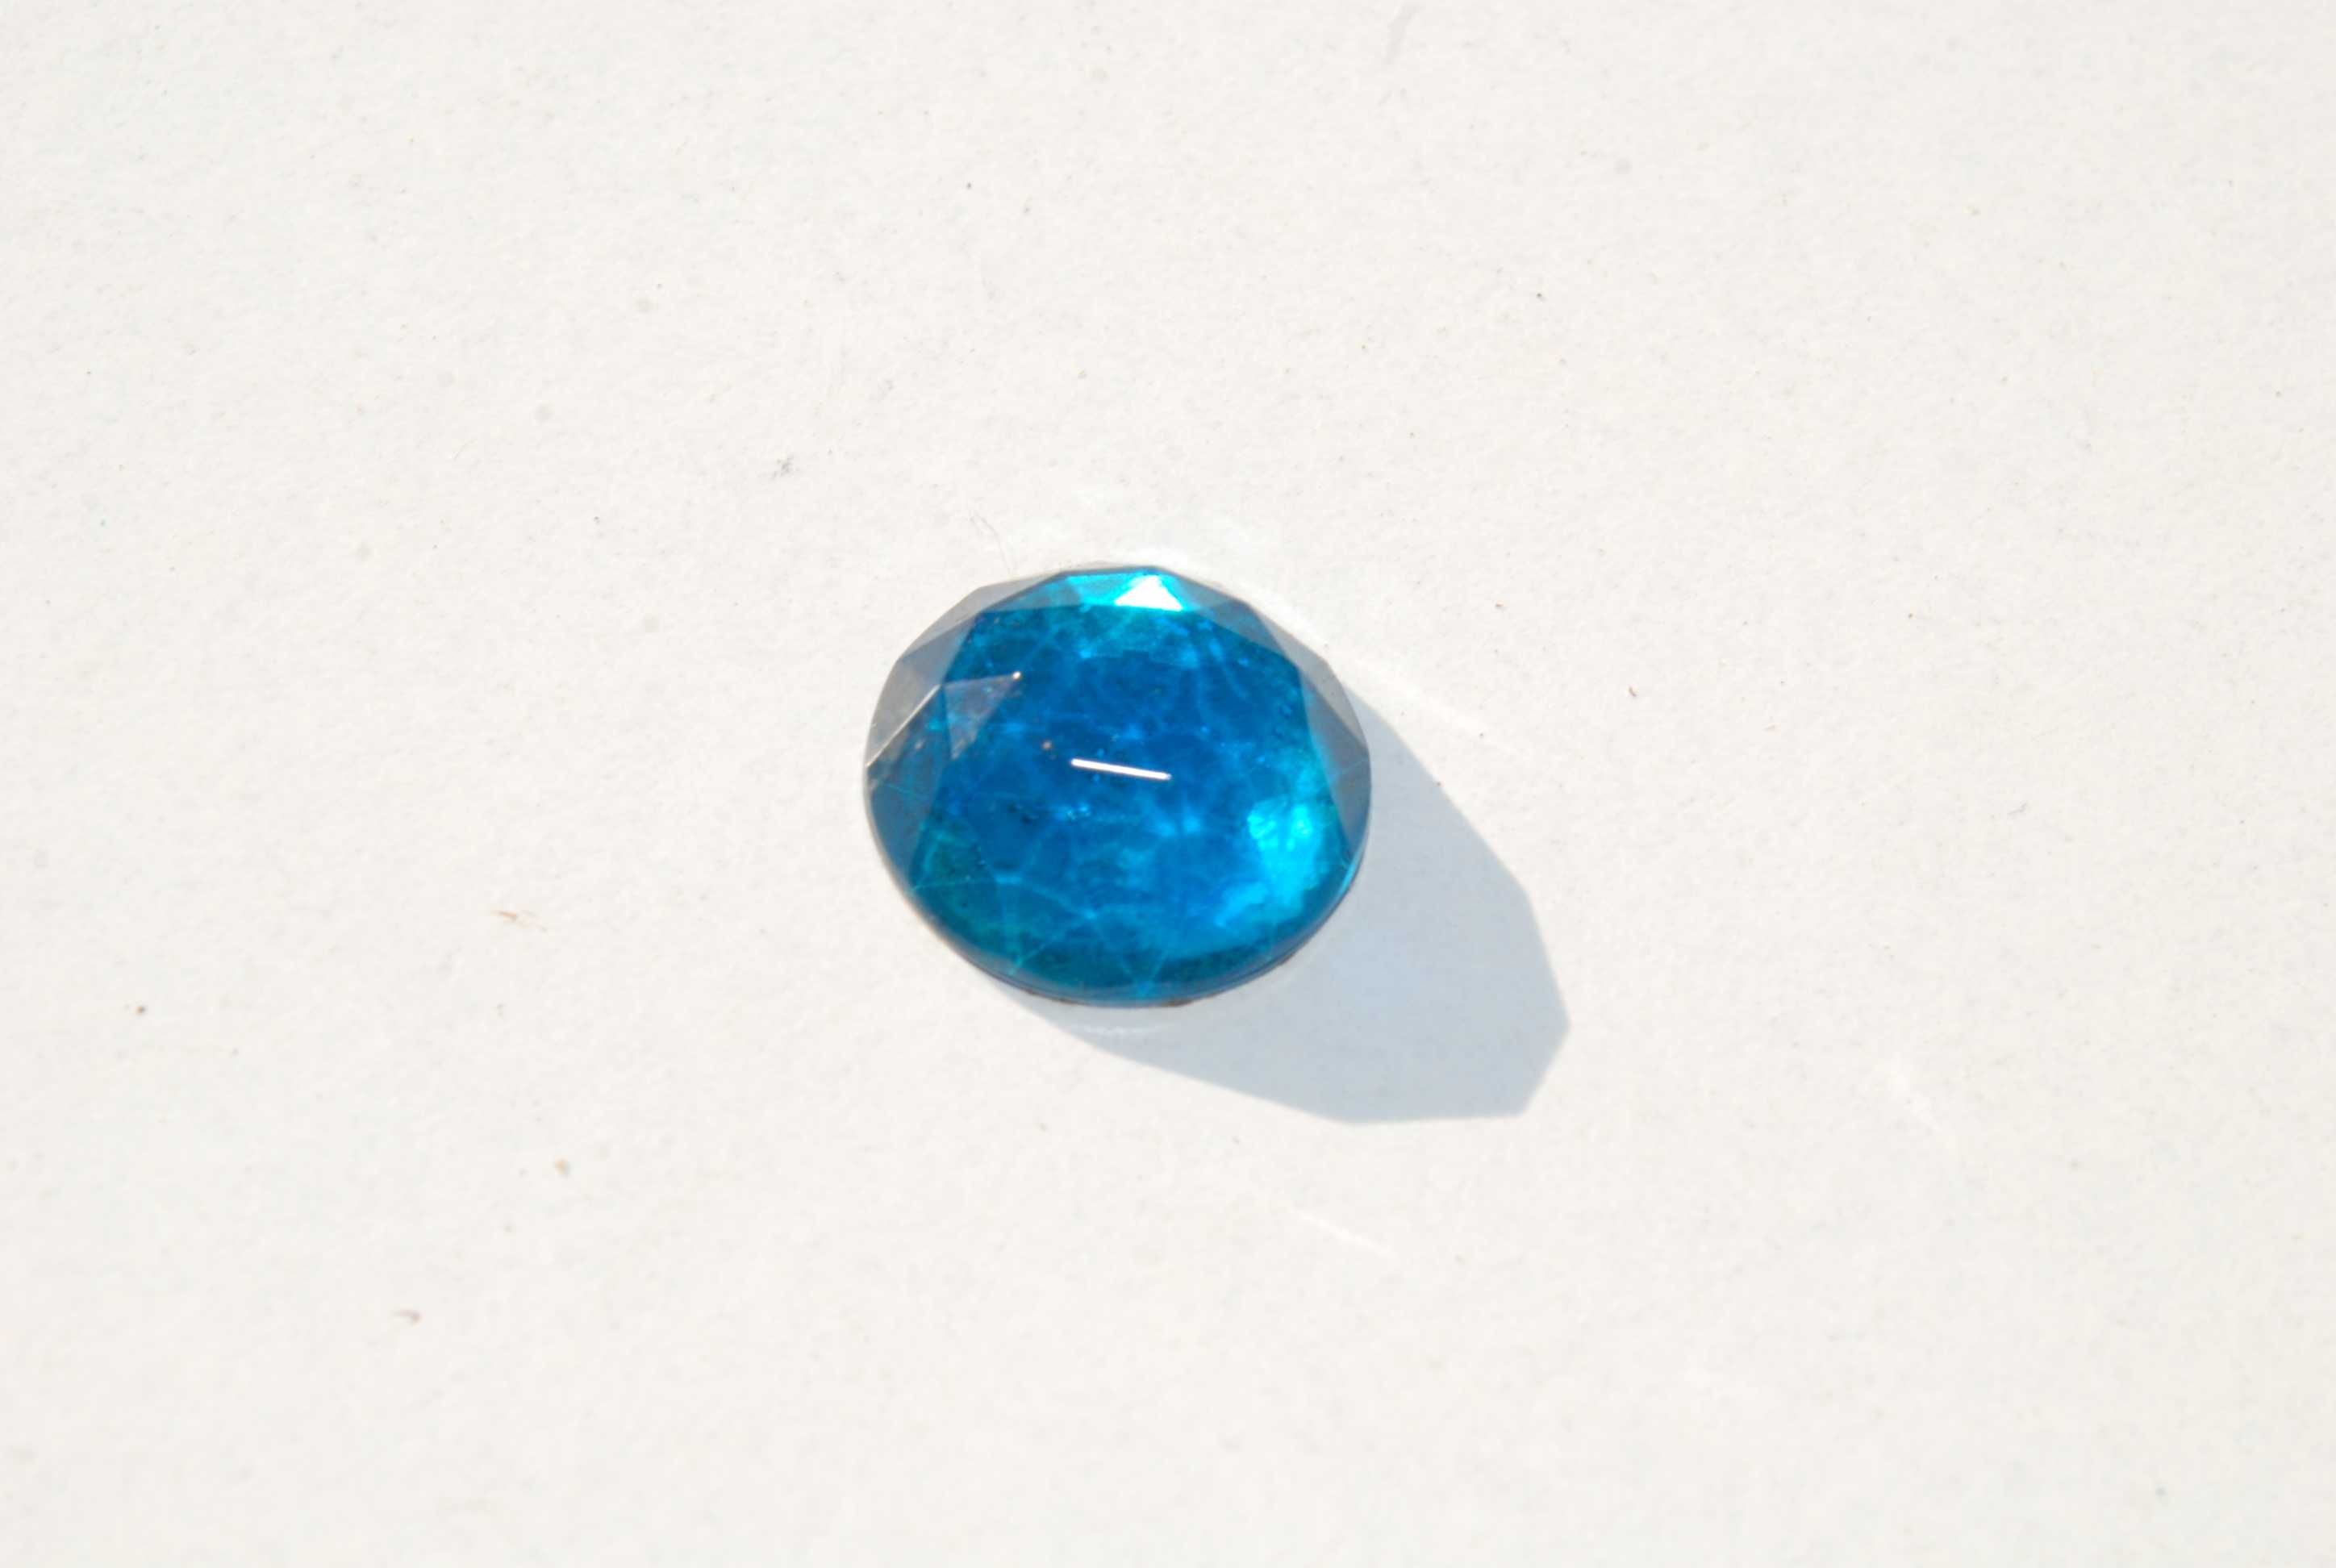 Stare szkło szlifowane ozdobne ozdoba niebieski kryształ antyk unikat